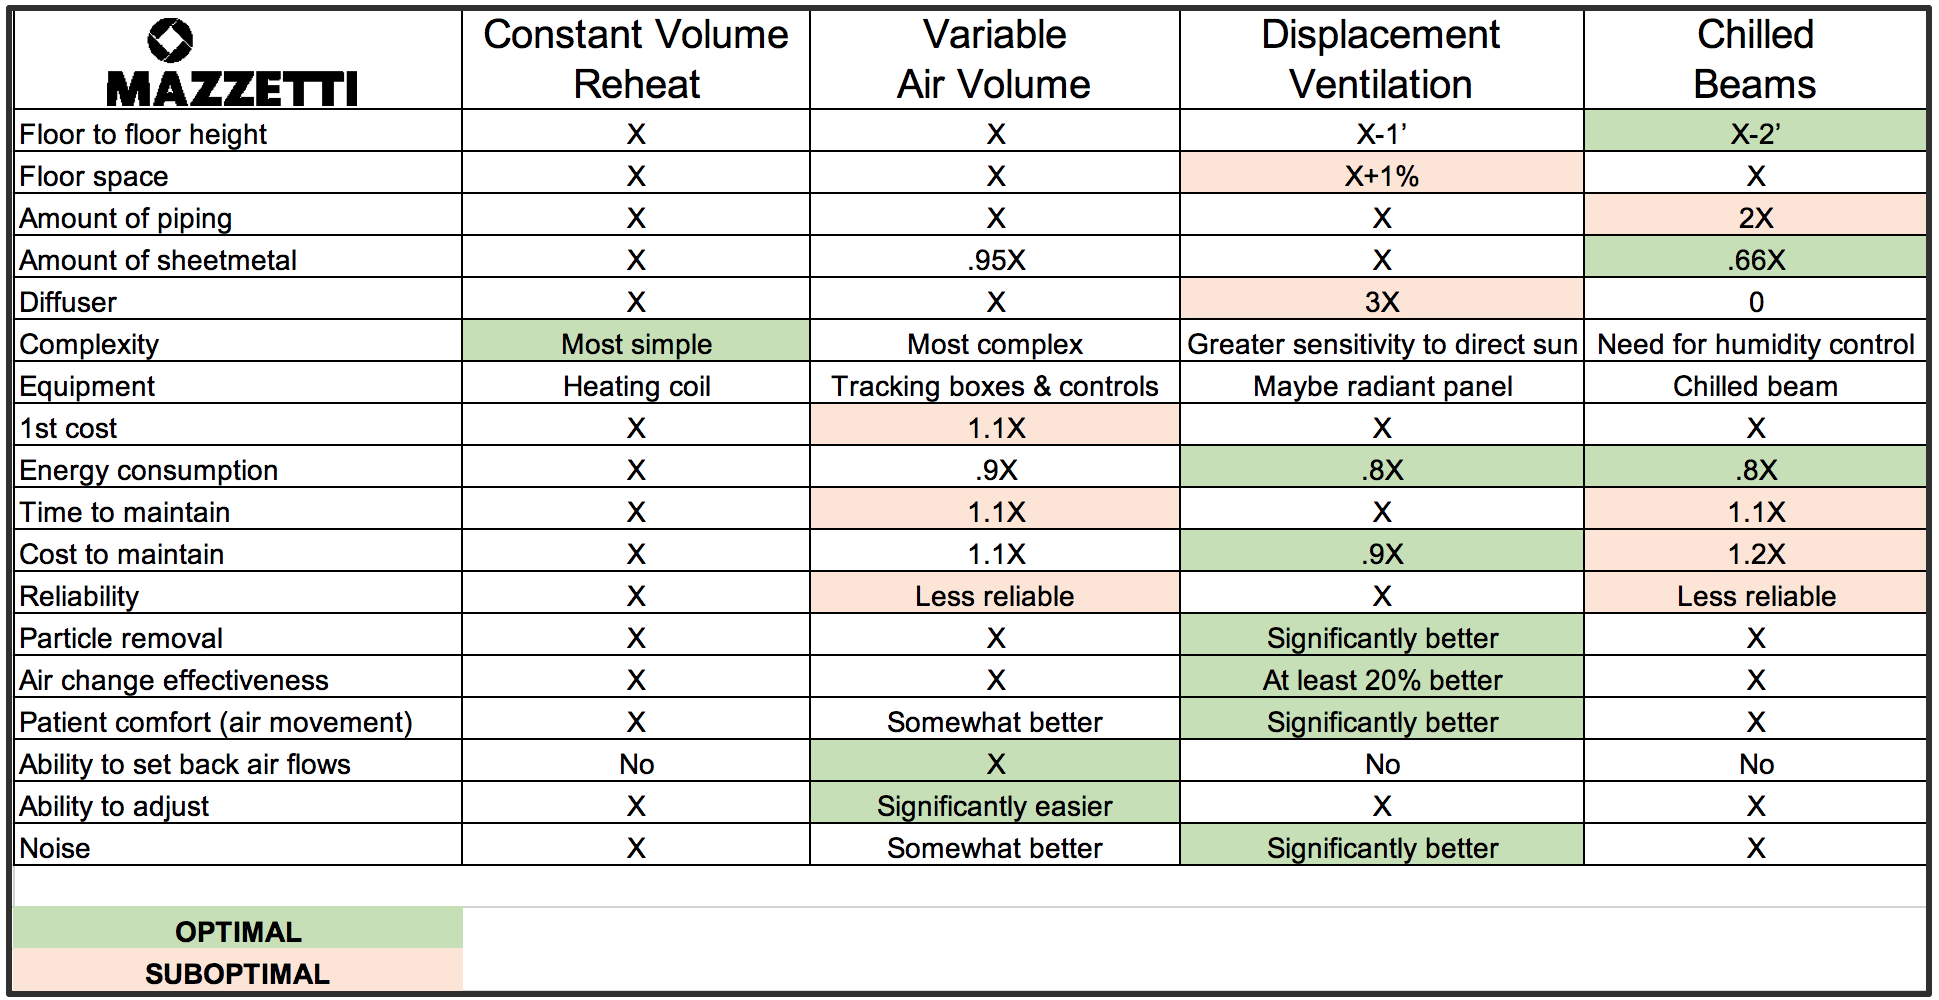 Mazzetti's Ventilation Comparison Table